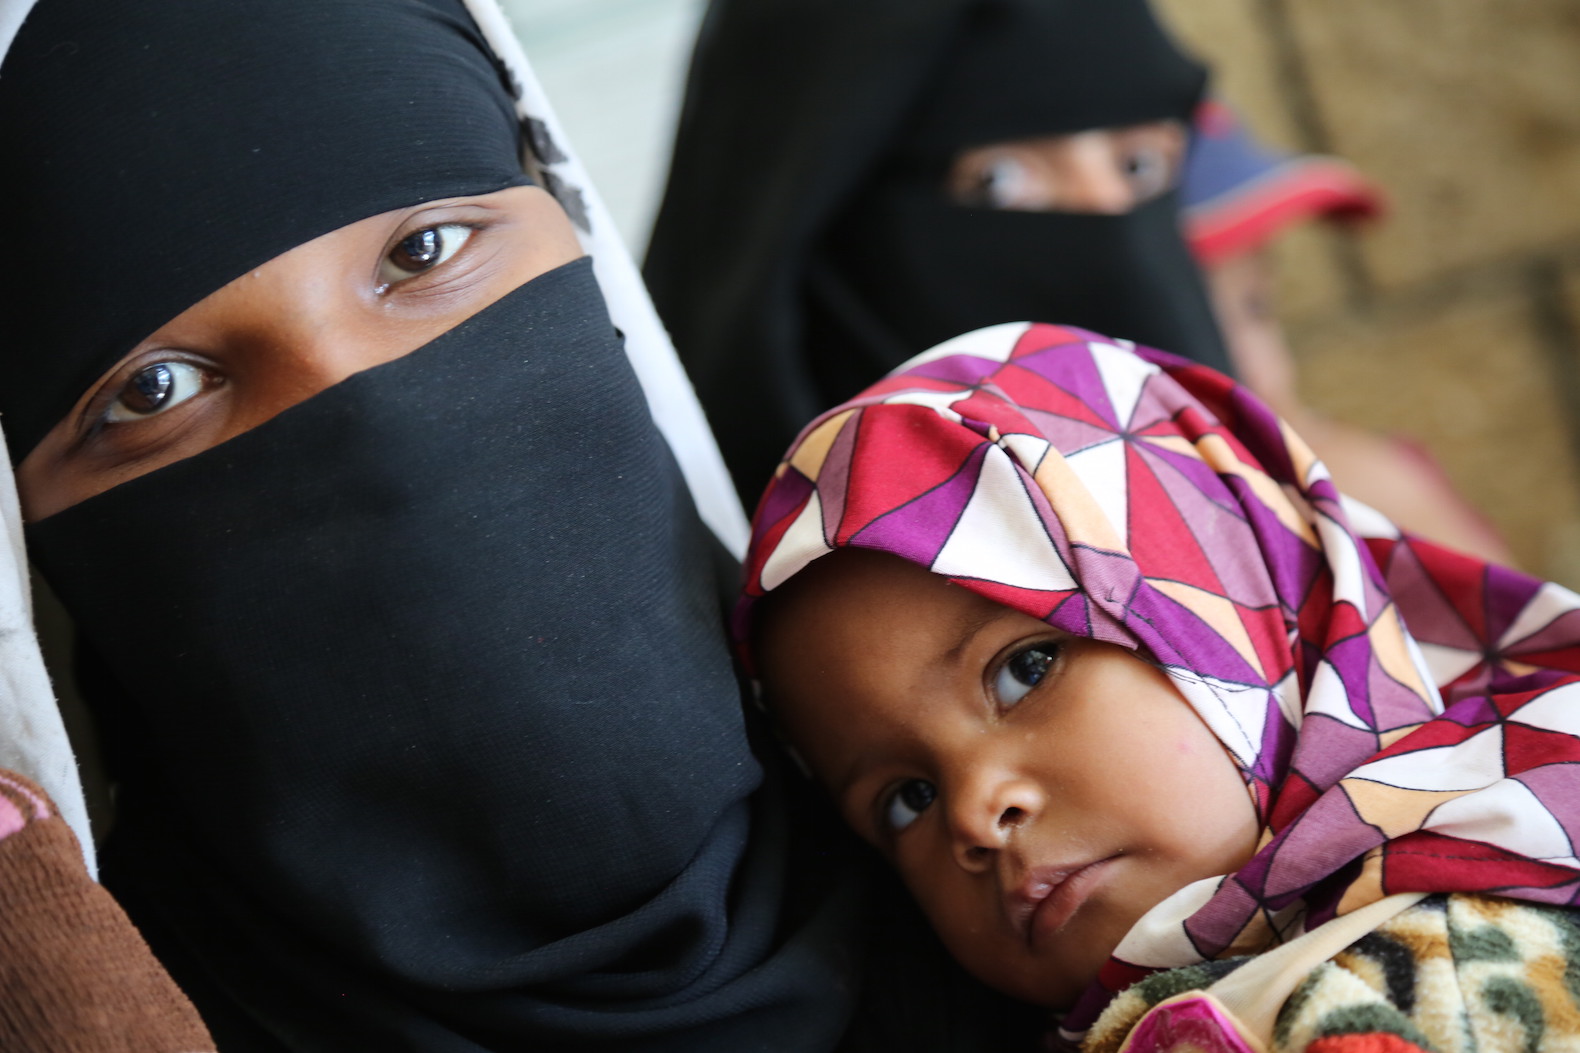  13 لاکھ یمنی بچے غذائی قلت کا شکار ،اسپتالوں میں دوائیں ختم